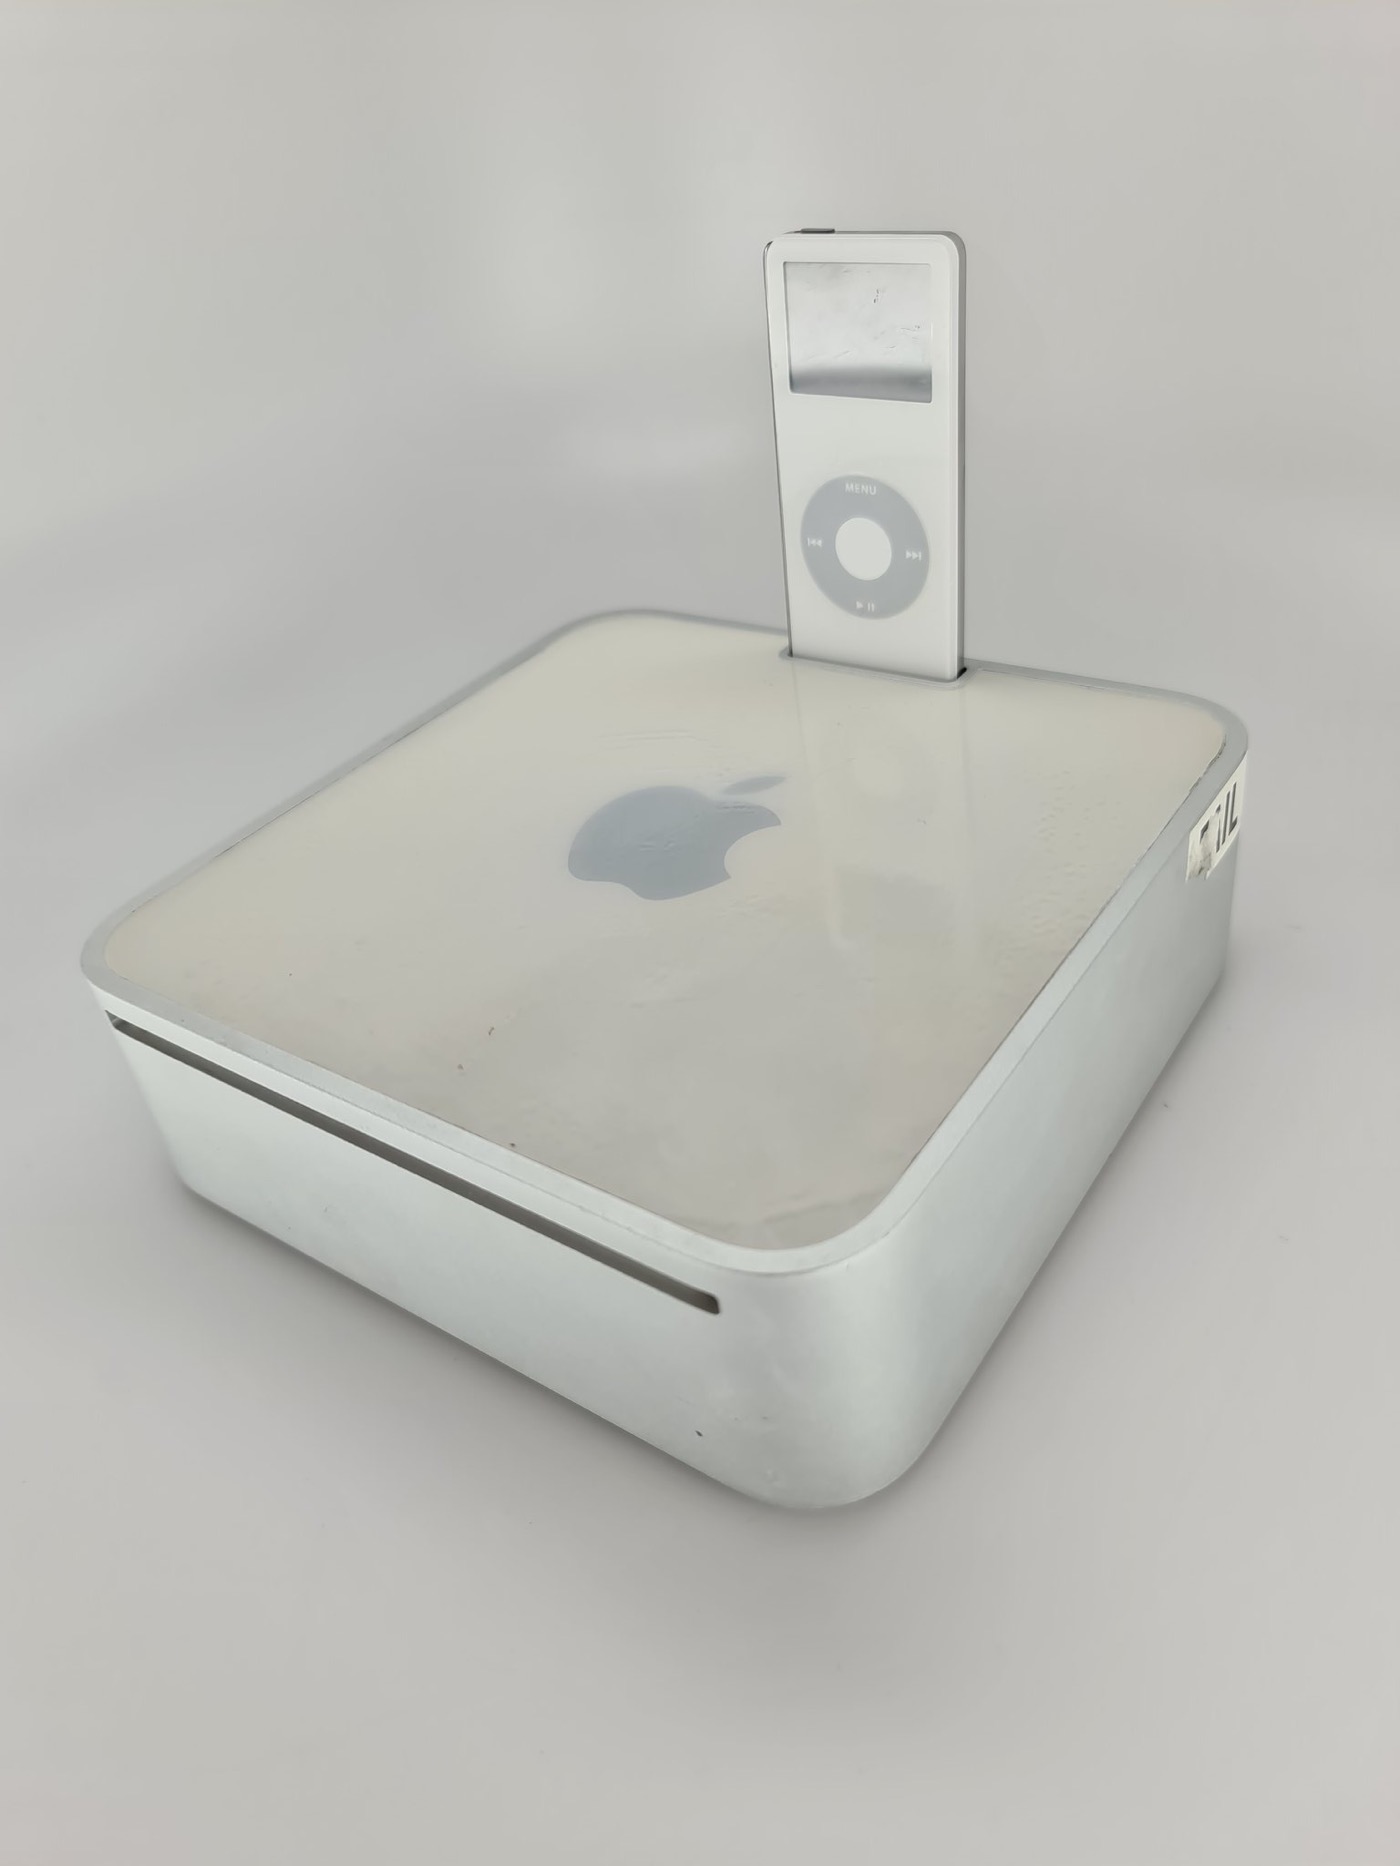 Appleが｢Mac mini｣に｢iPod nano｣用ドックを搭載することを検討していた事が明らかに（追記）